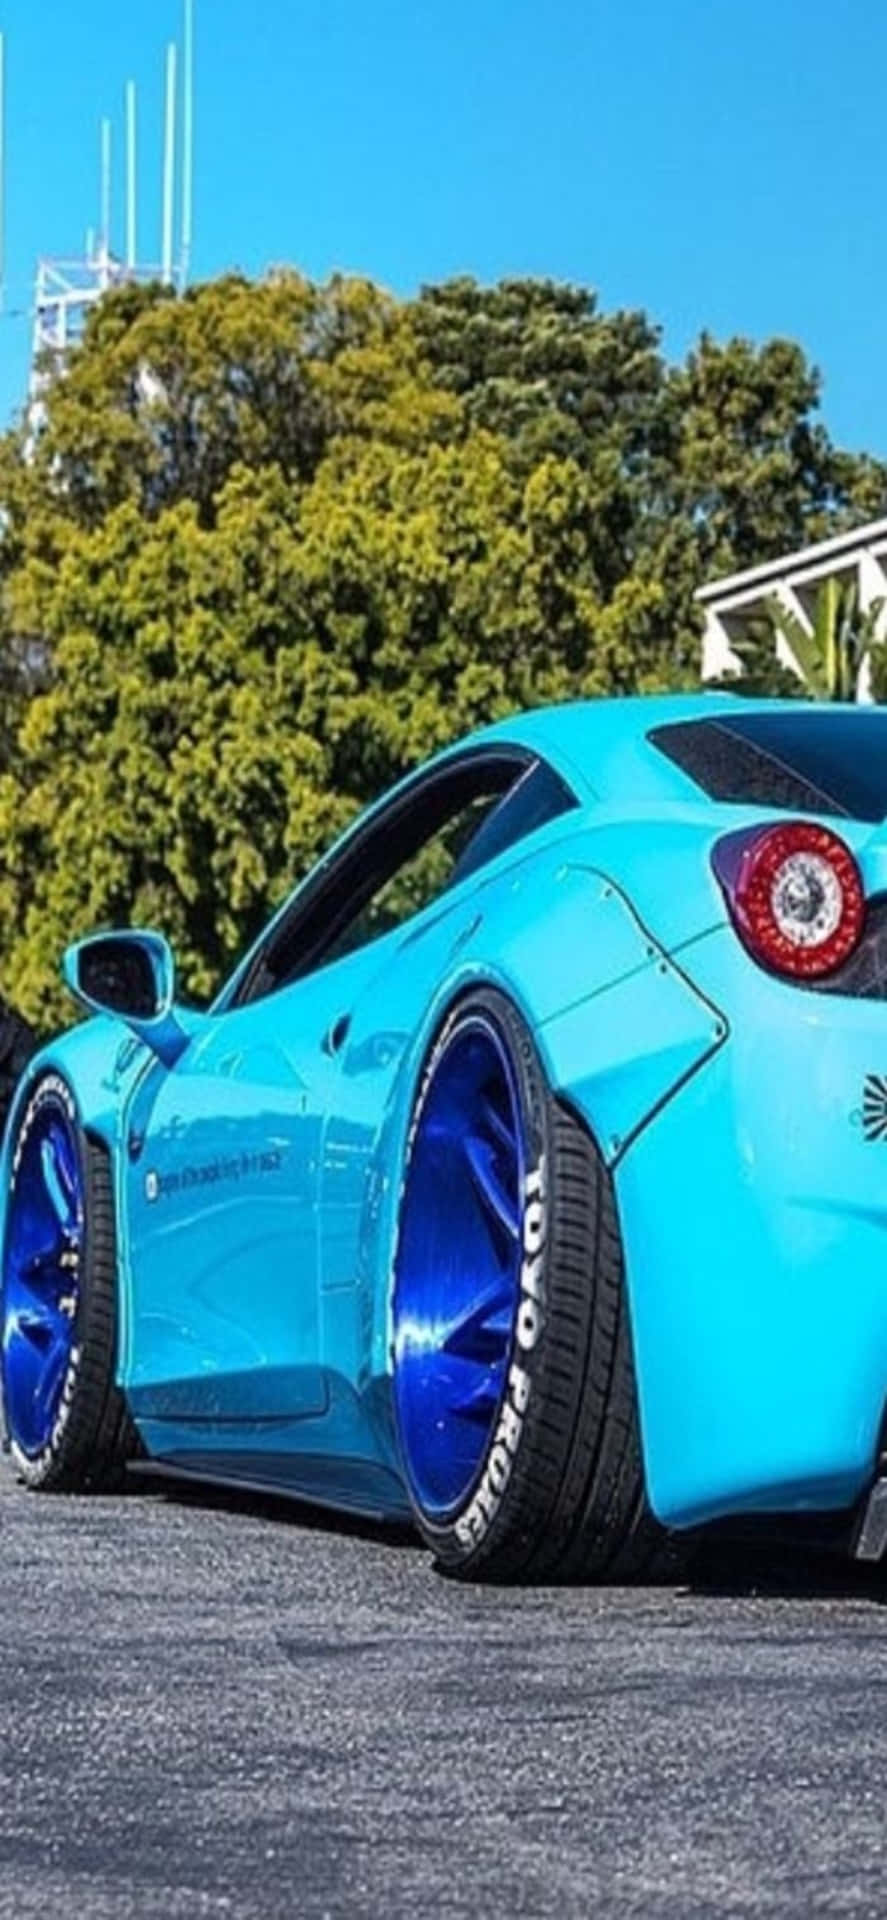 Fondode Pantalla Para Iphone Xs Max De Ferrari, Con Un Ferrari 458 Azul Claro.